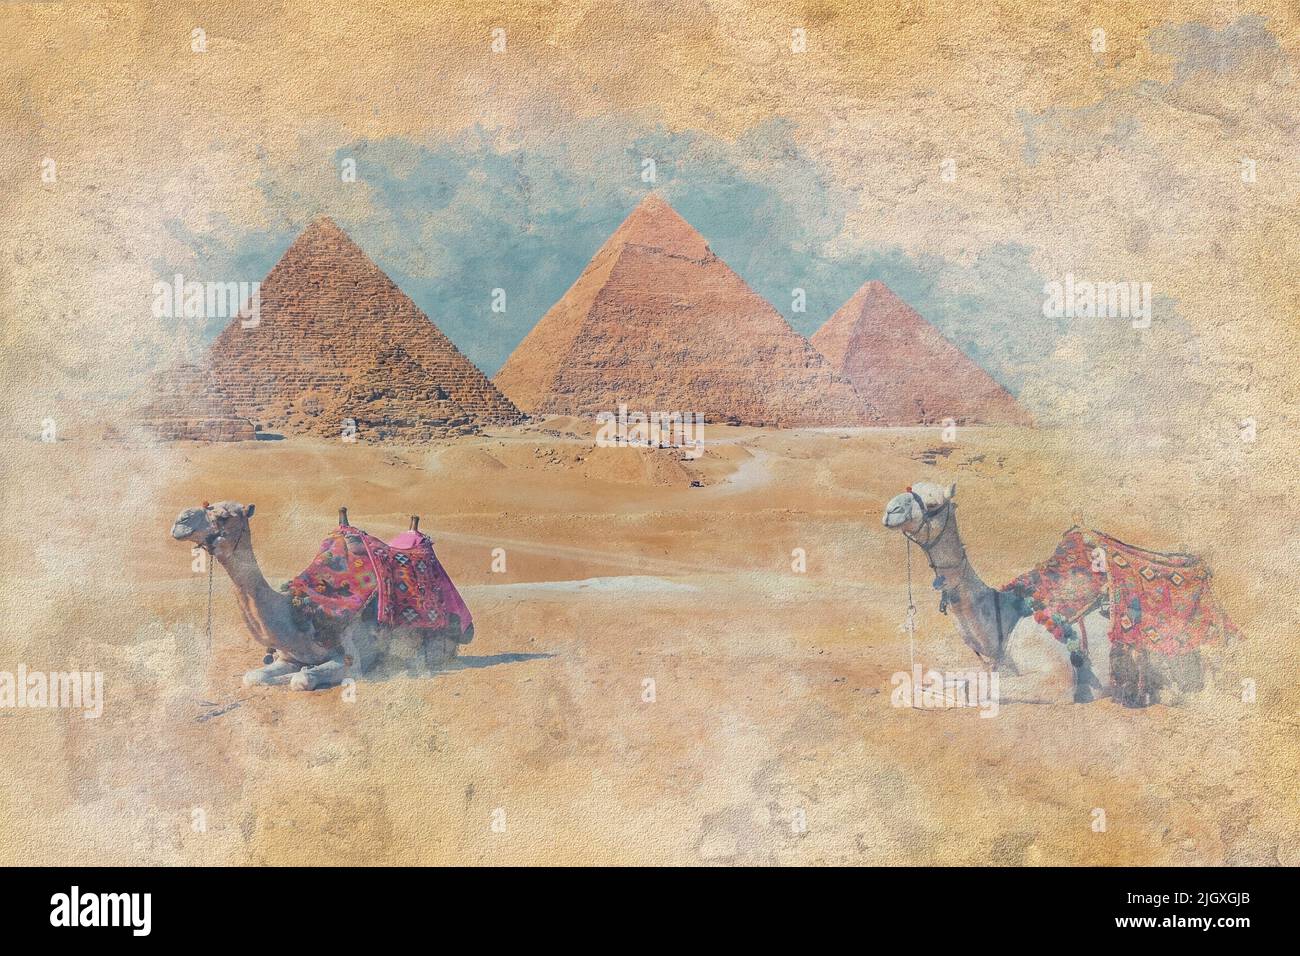 Las Pirámides de Giza en Egipto - ilustración del efecto de acuarela Foto de stock